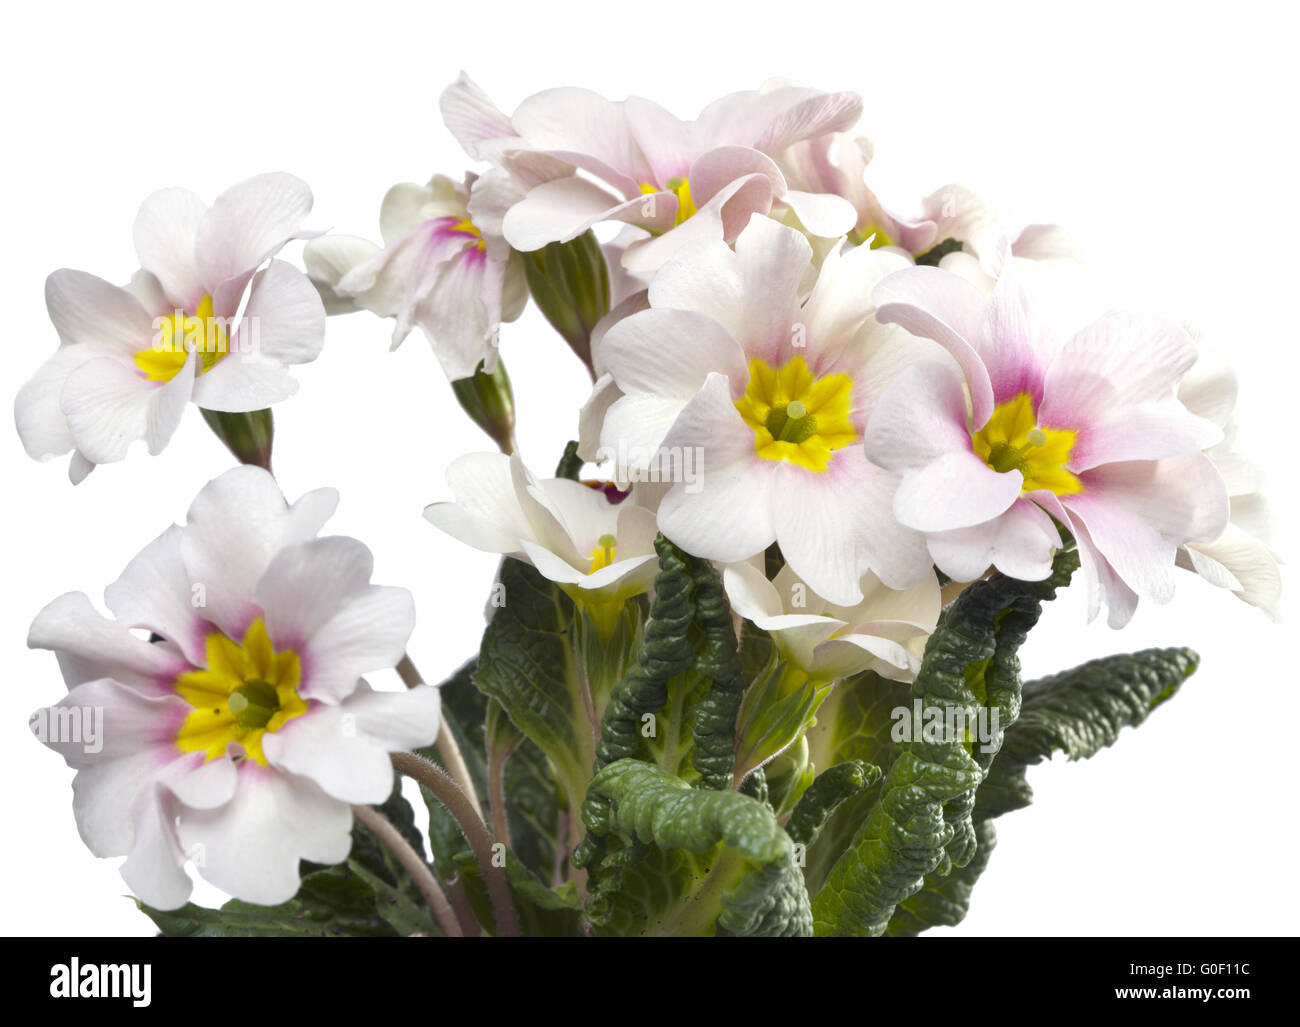 Primula on white background Stock Photo